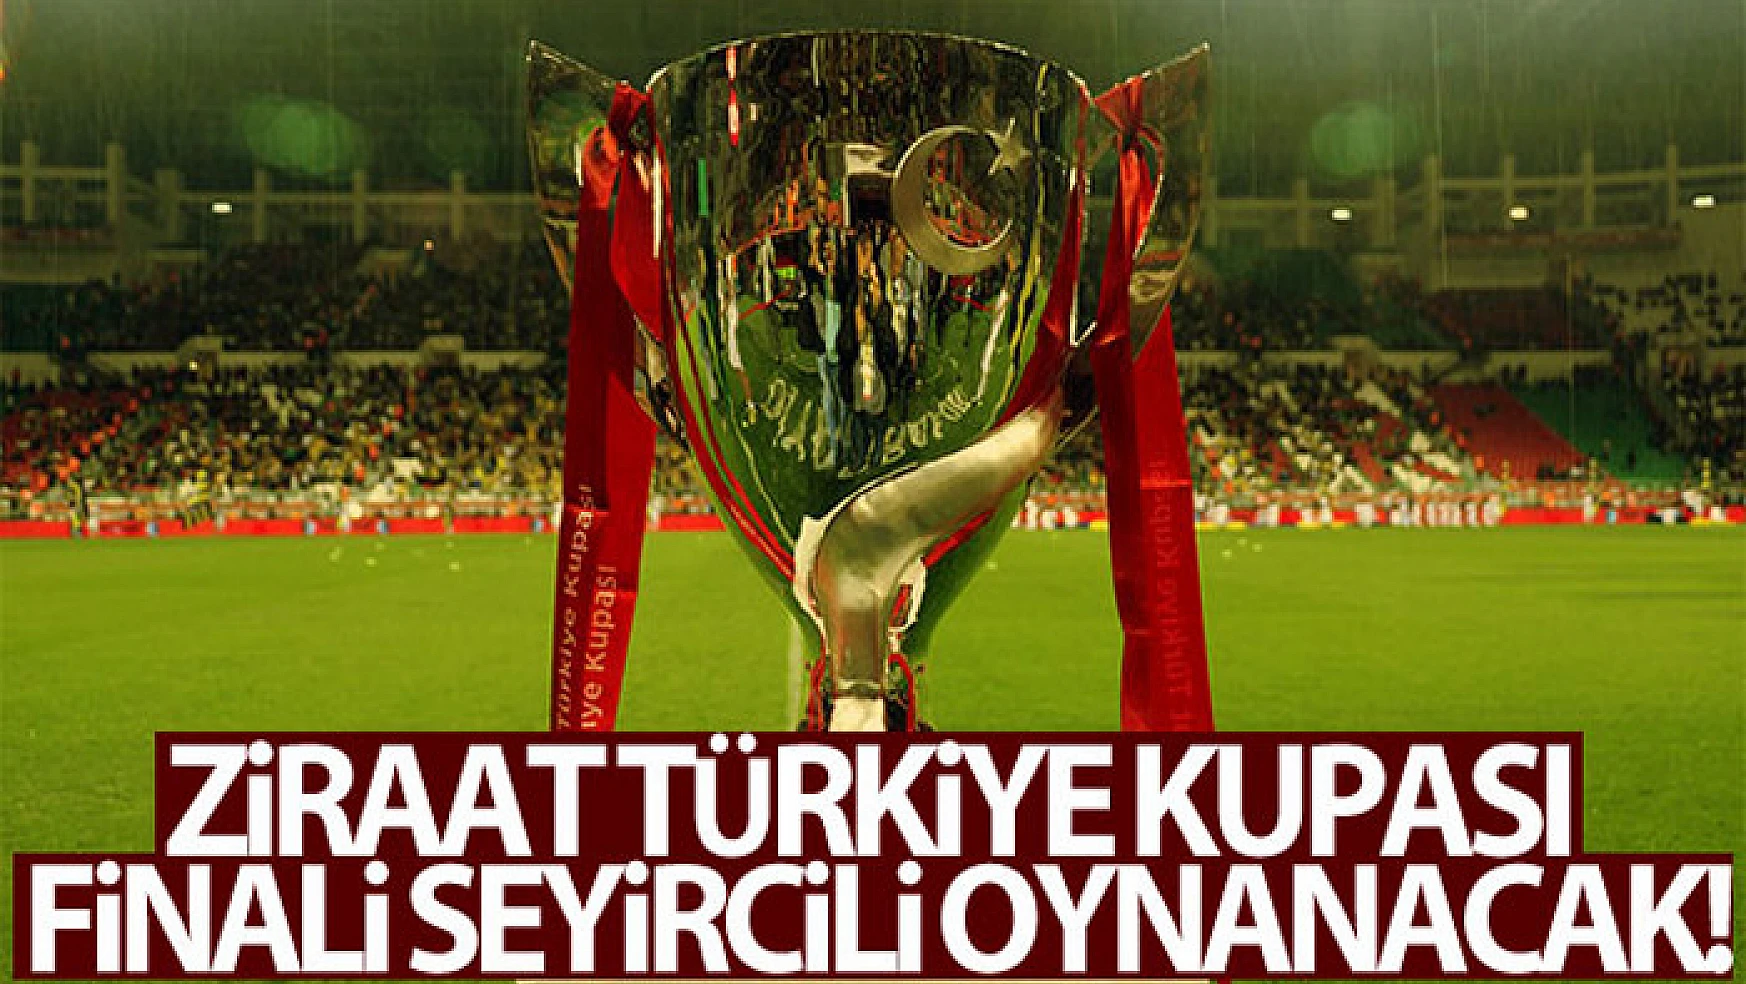 Ziraat Türkiye Kupası finali seyircili oynanacak!